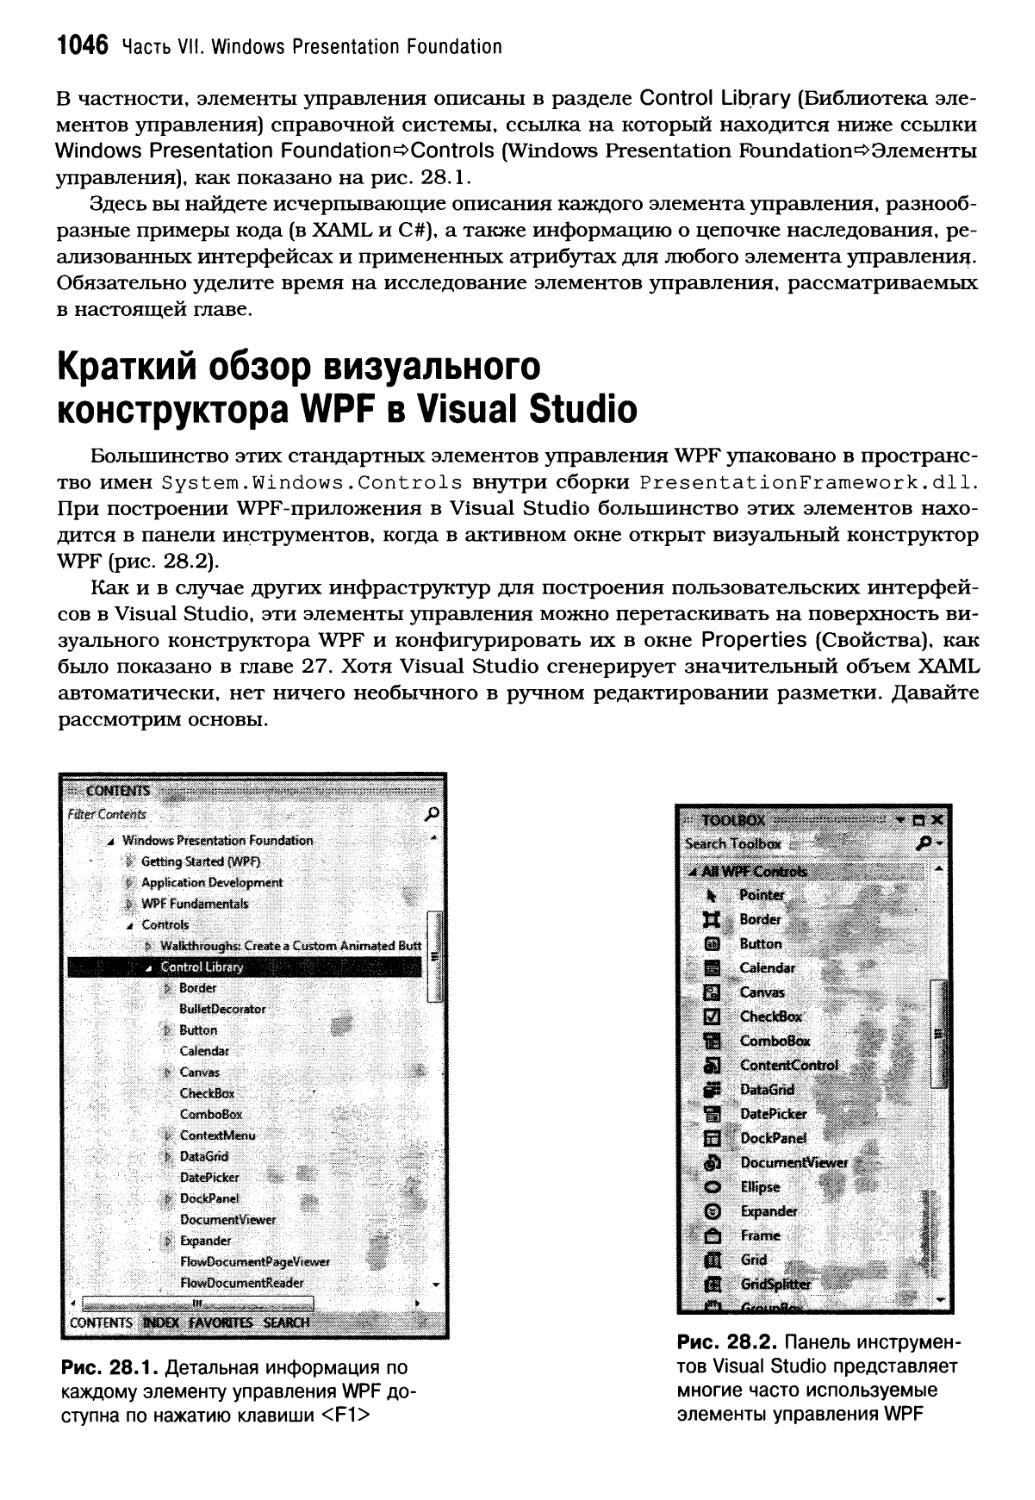 Краткий обзор визуального конструктора WPF в Visual Studio